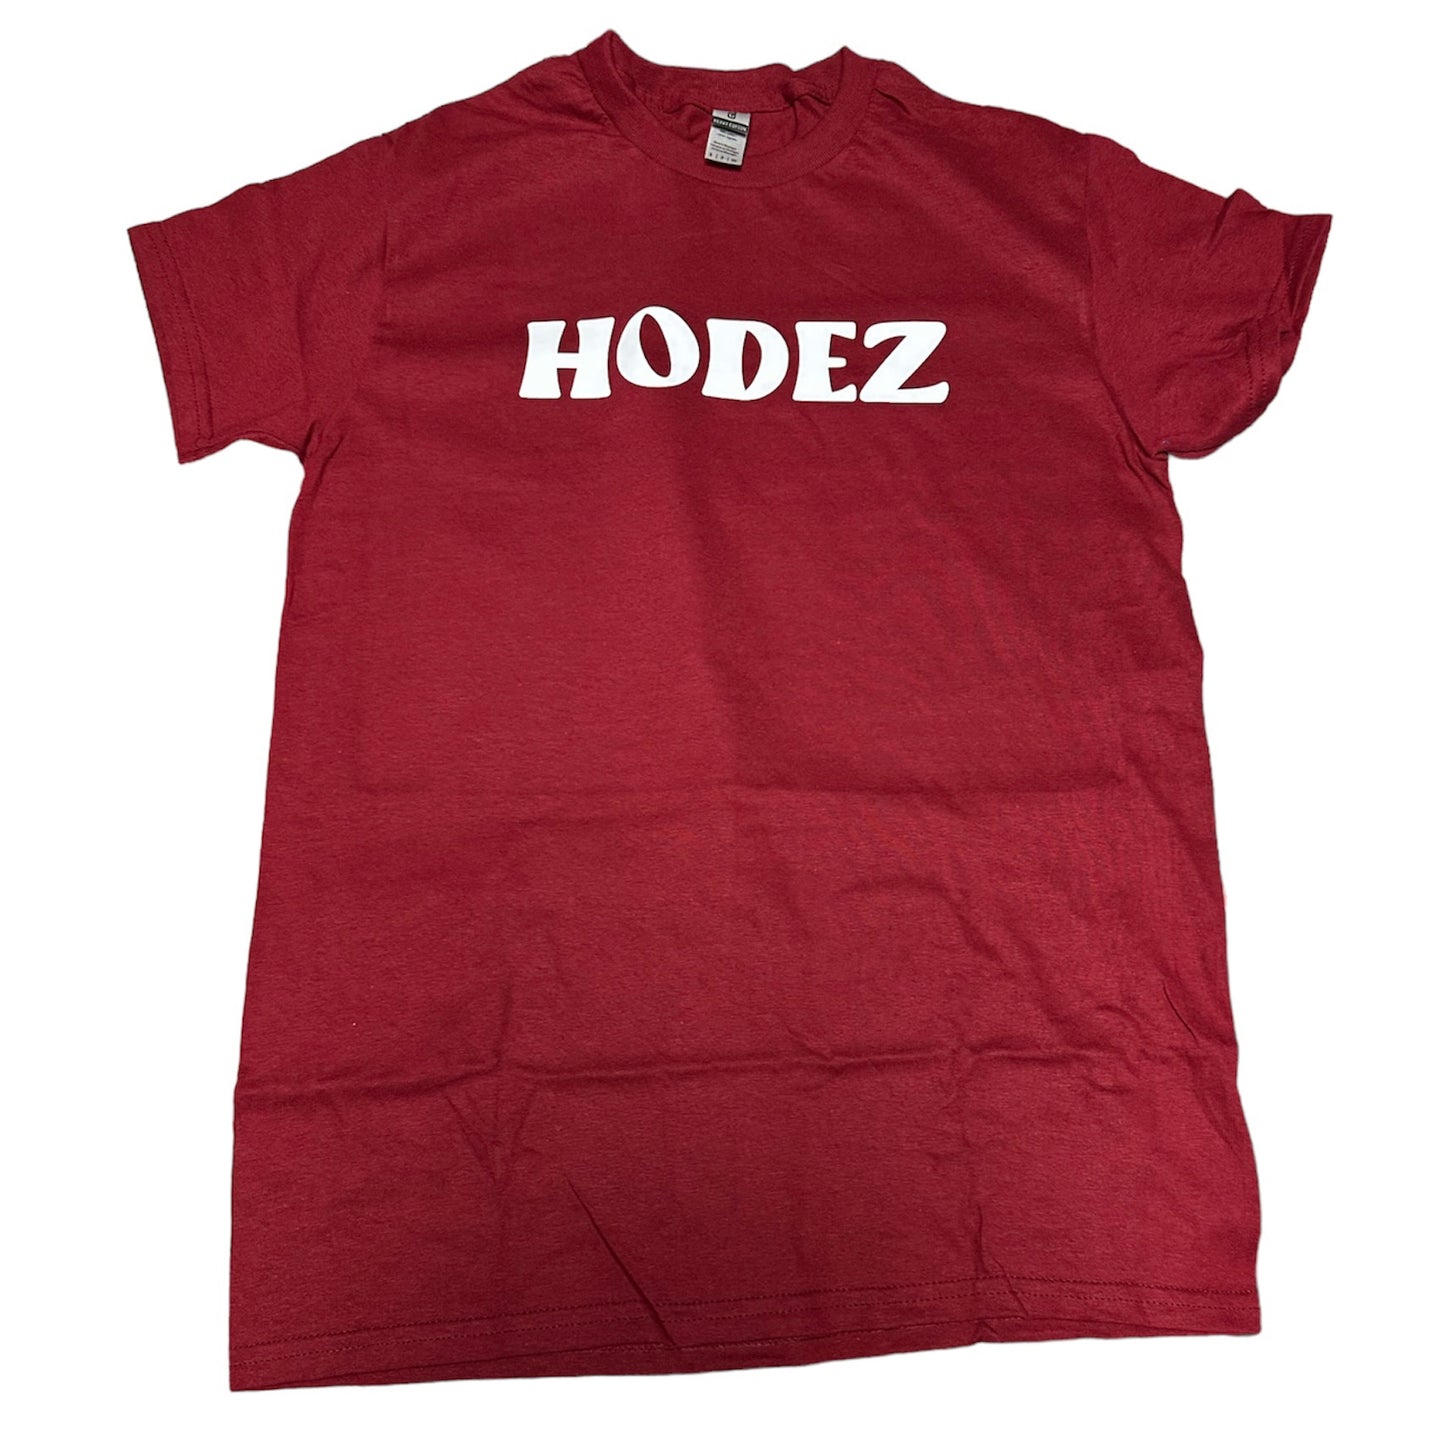 Hodez T-Shirt